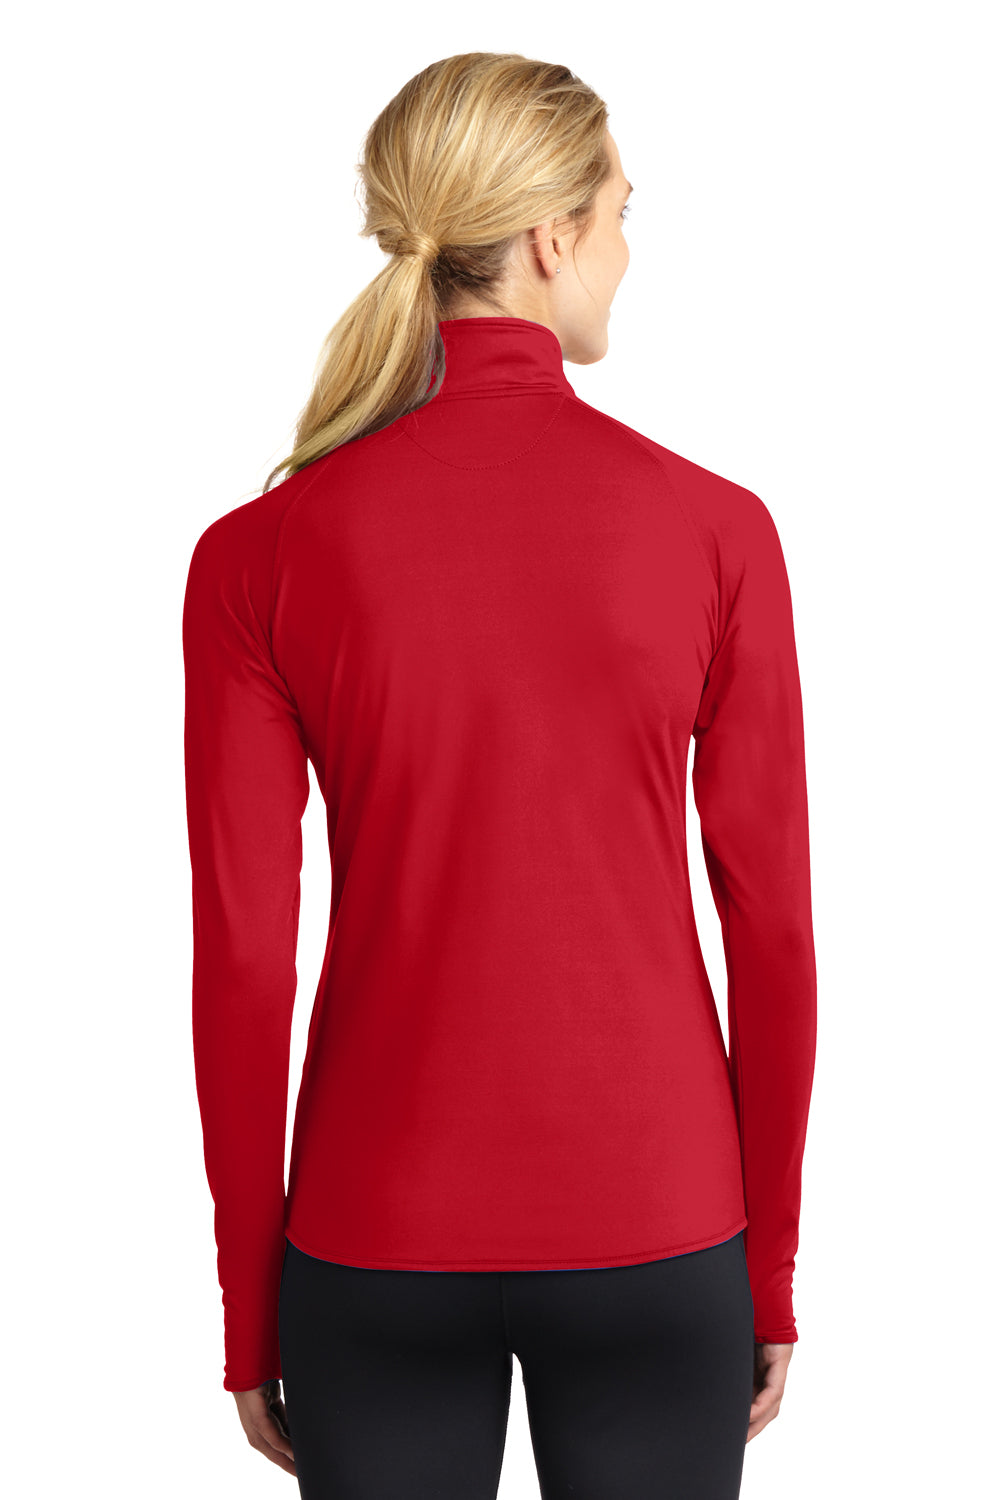 Sport-Tek LST850 Womens Sport-Wick Moisture Wicking 1/4 Zip Sweatshirt Red Back